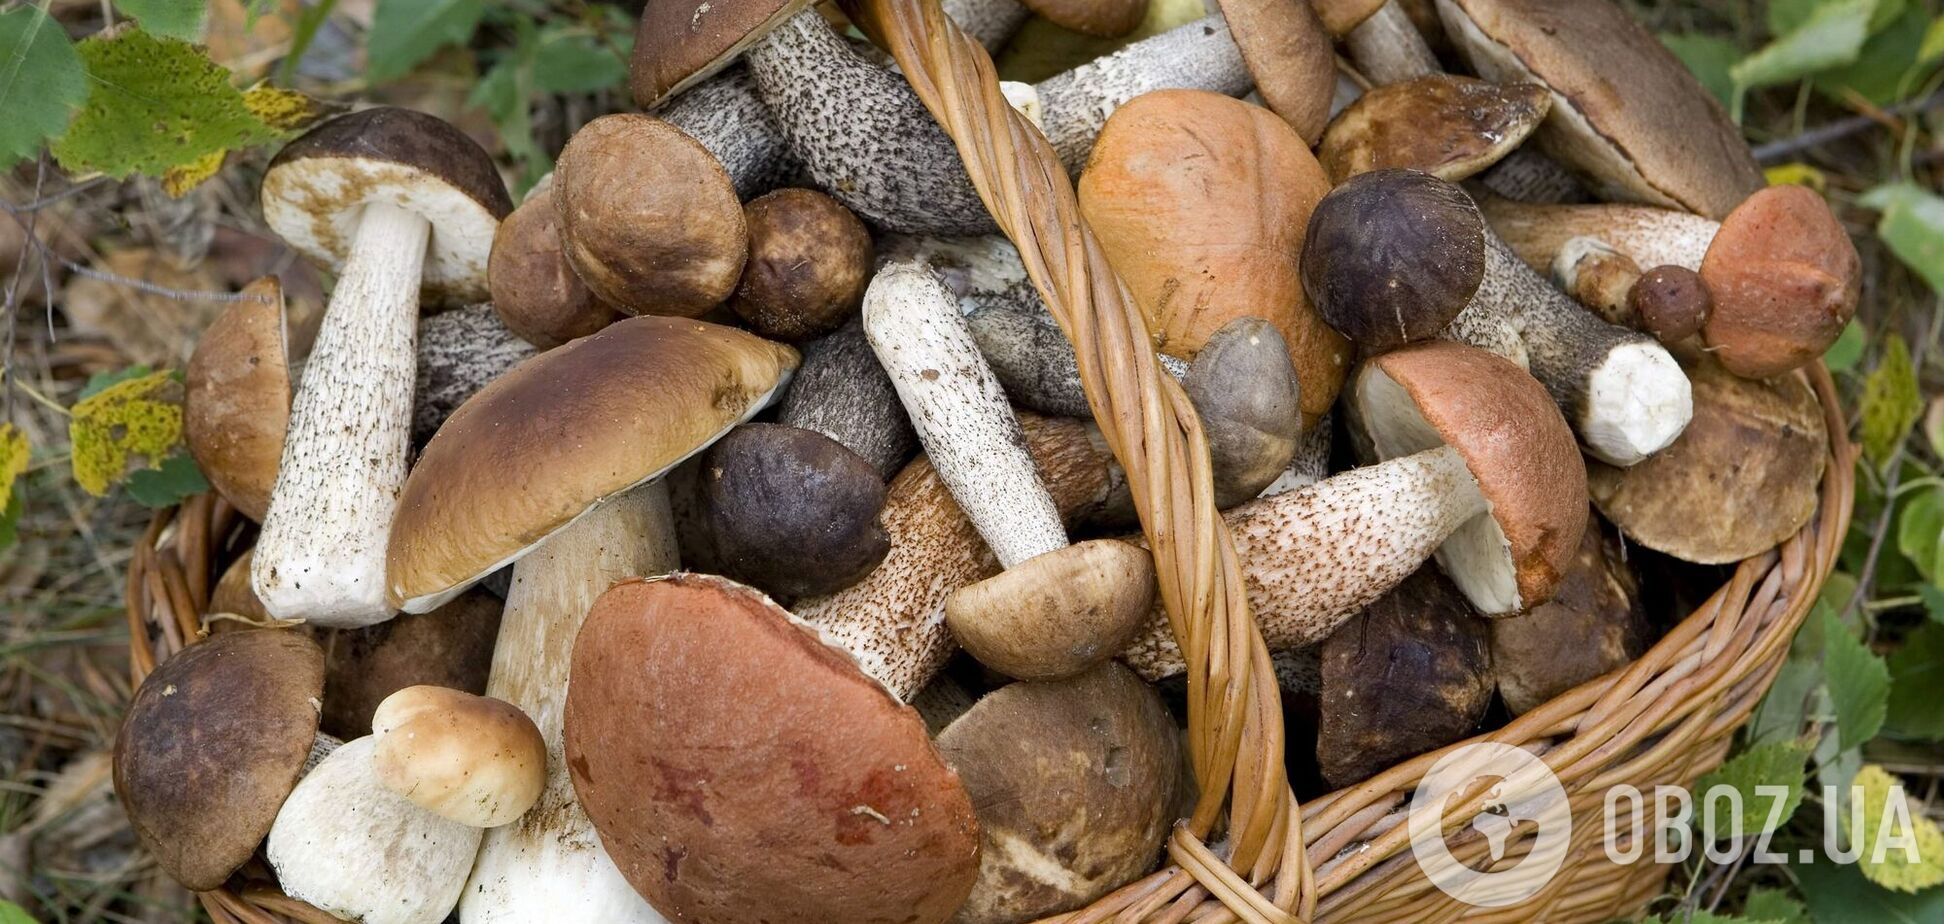 Брускетта и омлет: пять быстрых и вкусных блюд с грибами